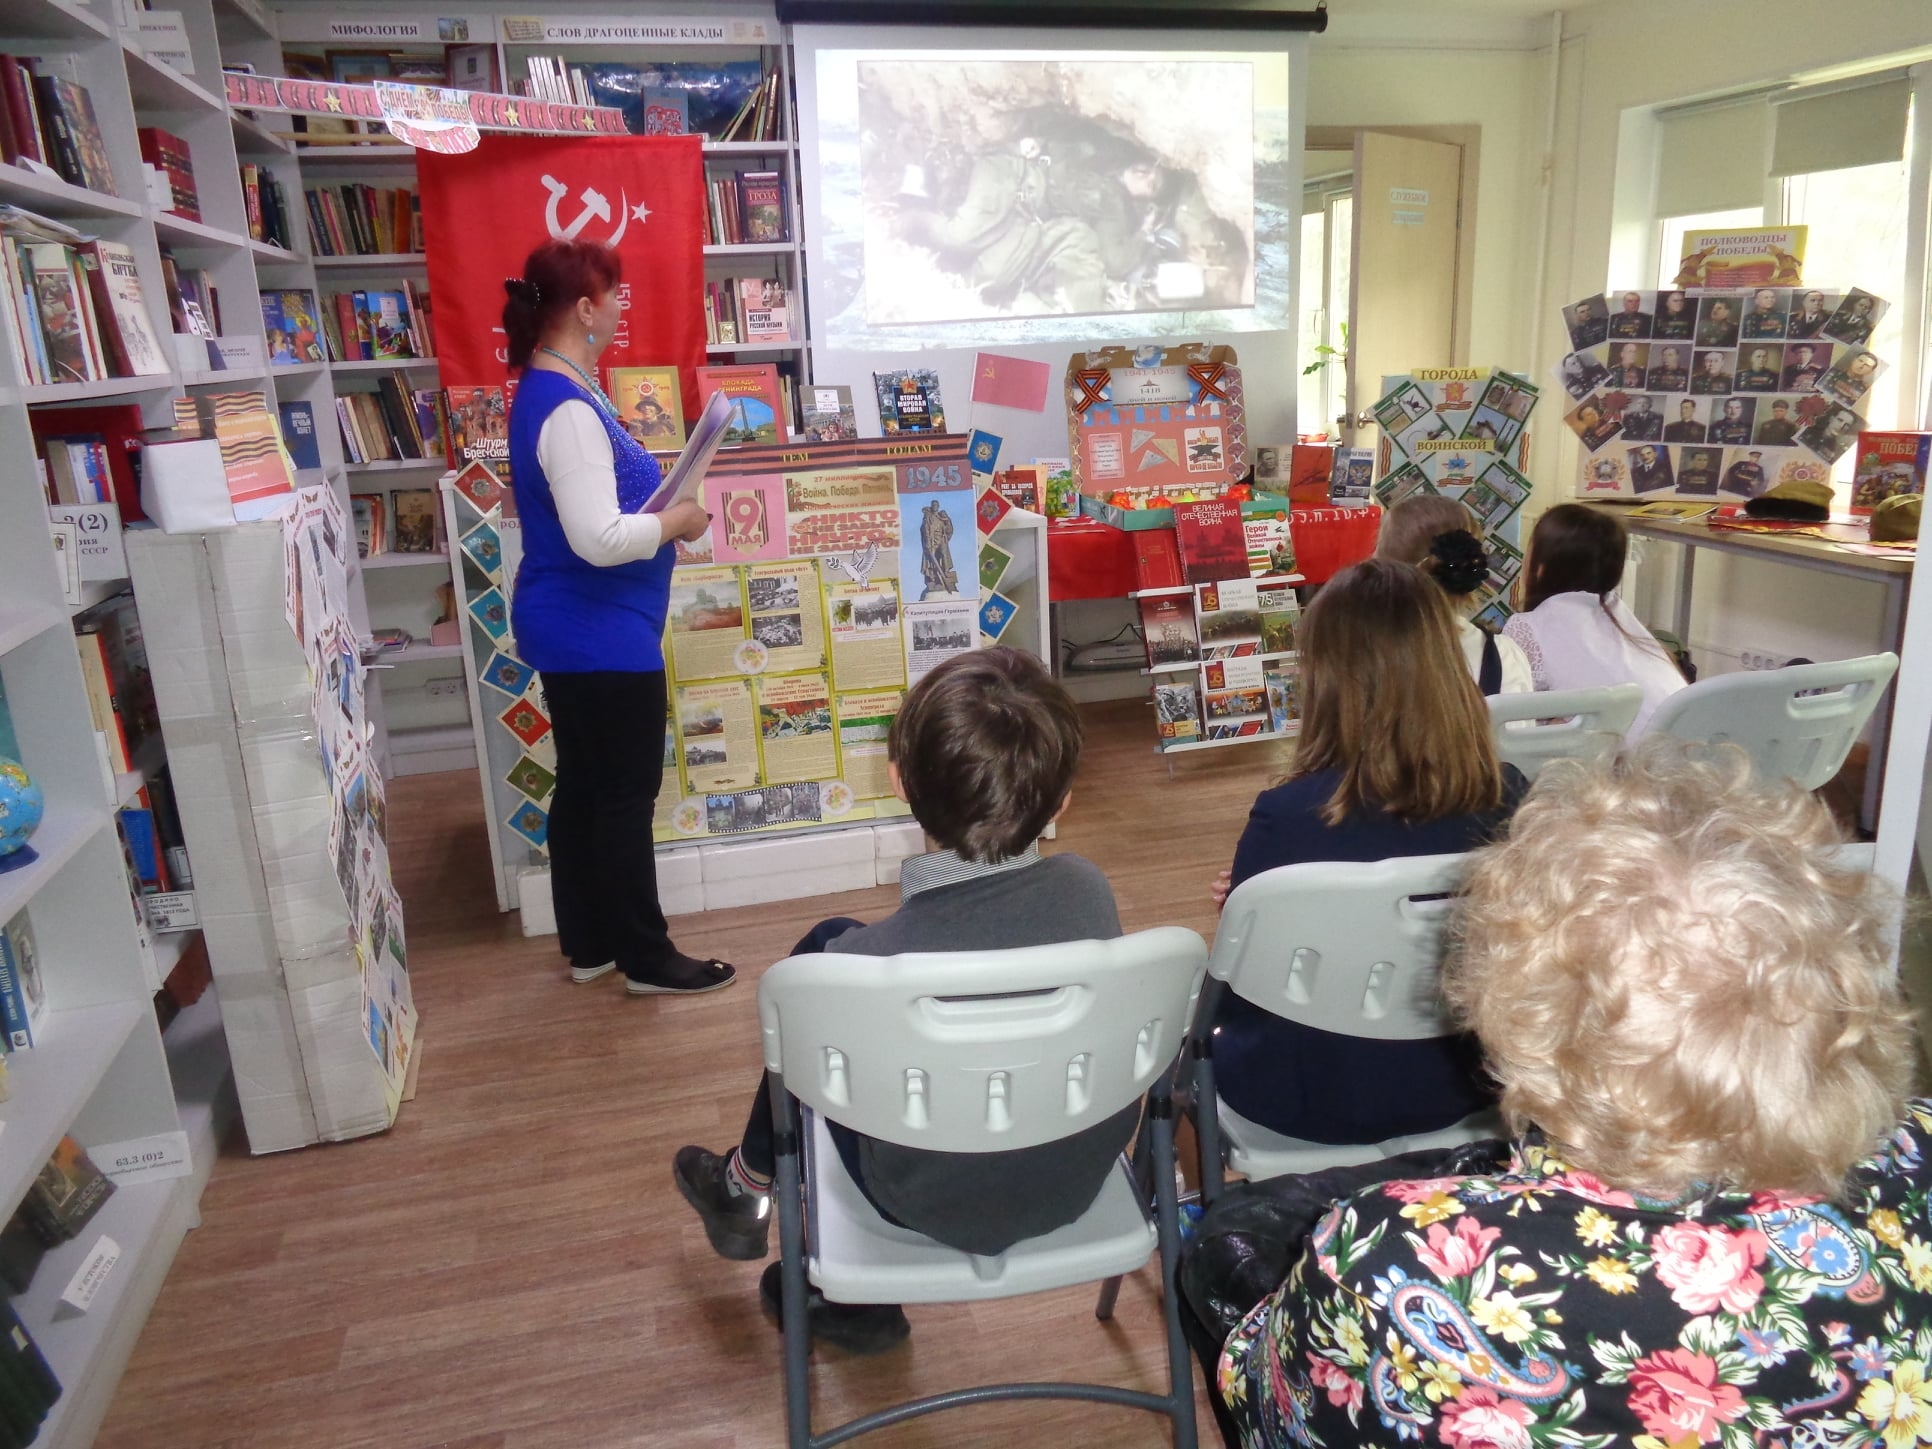 Представители Централизованной библиотечной системы Щербинки провели встречу. Фото: с официальной страницы учреждения в социальных сетях